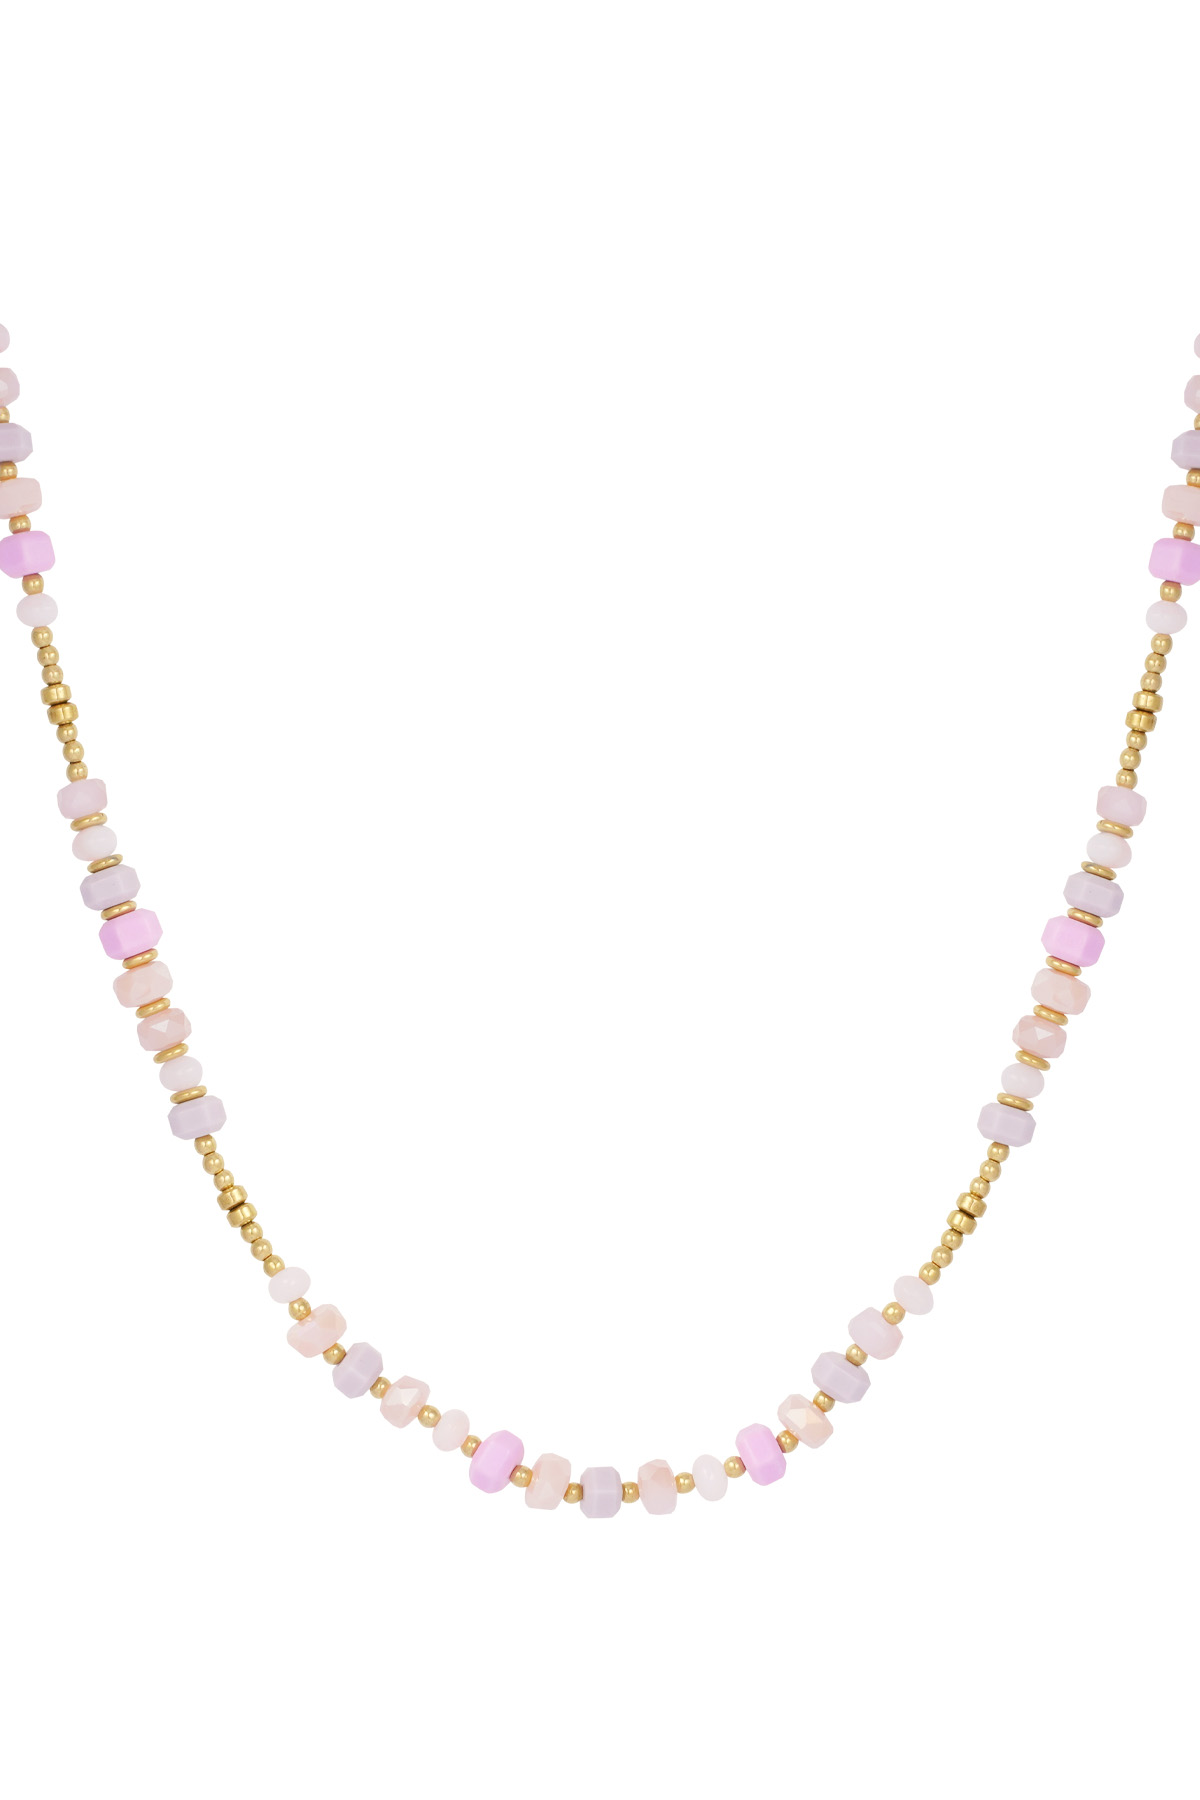 Halskette bunt gewickelt - rosa/gold 